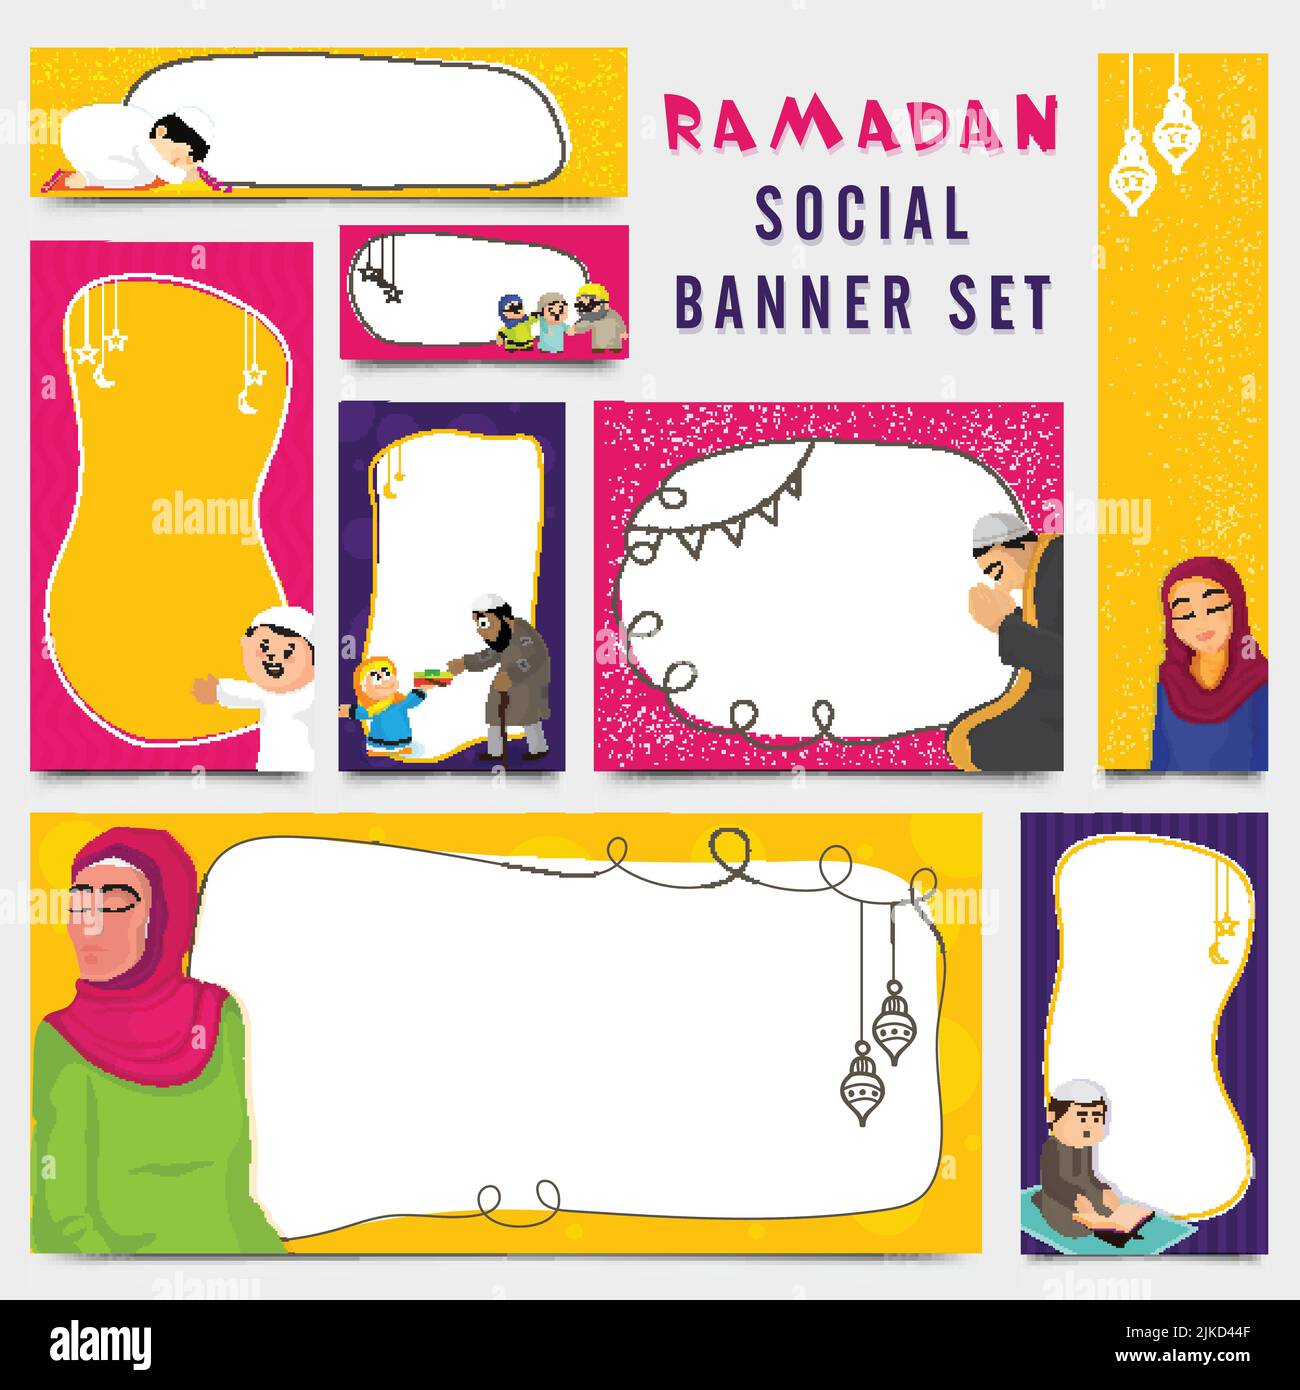 Ramadan Festival Social Banner Und Template Set Mit Islamischen Menschen, Die Verschiedene Rituale Zeigen Und Raum Für Textnachrichten Geben. Stock Vektor